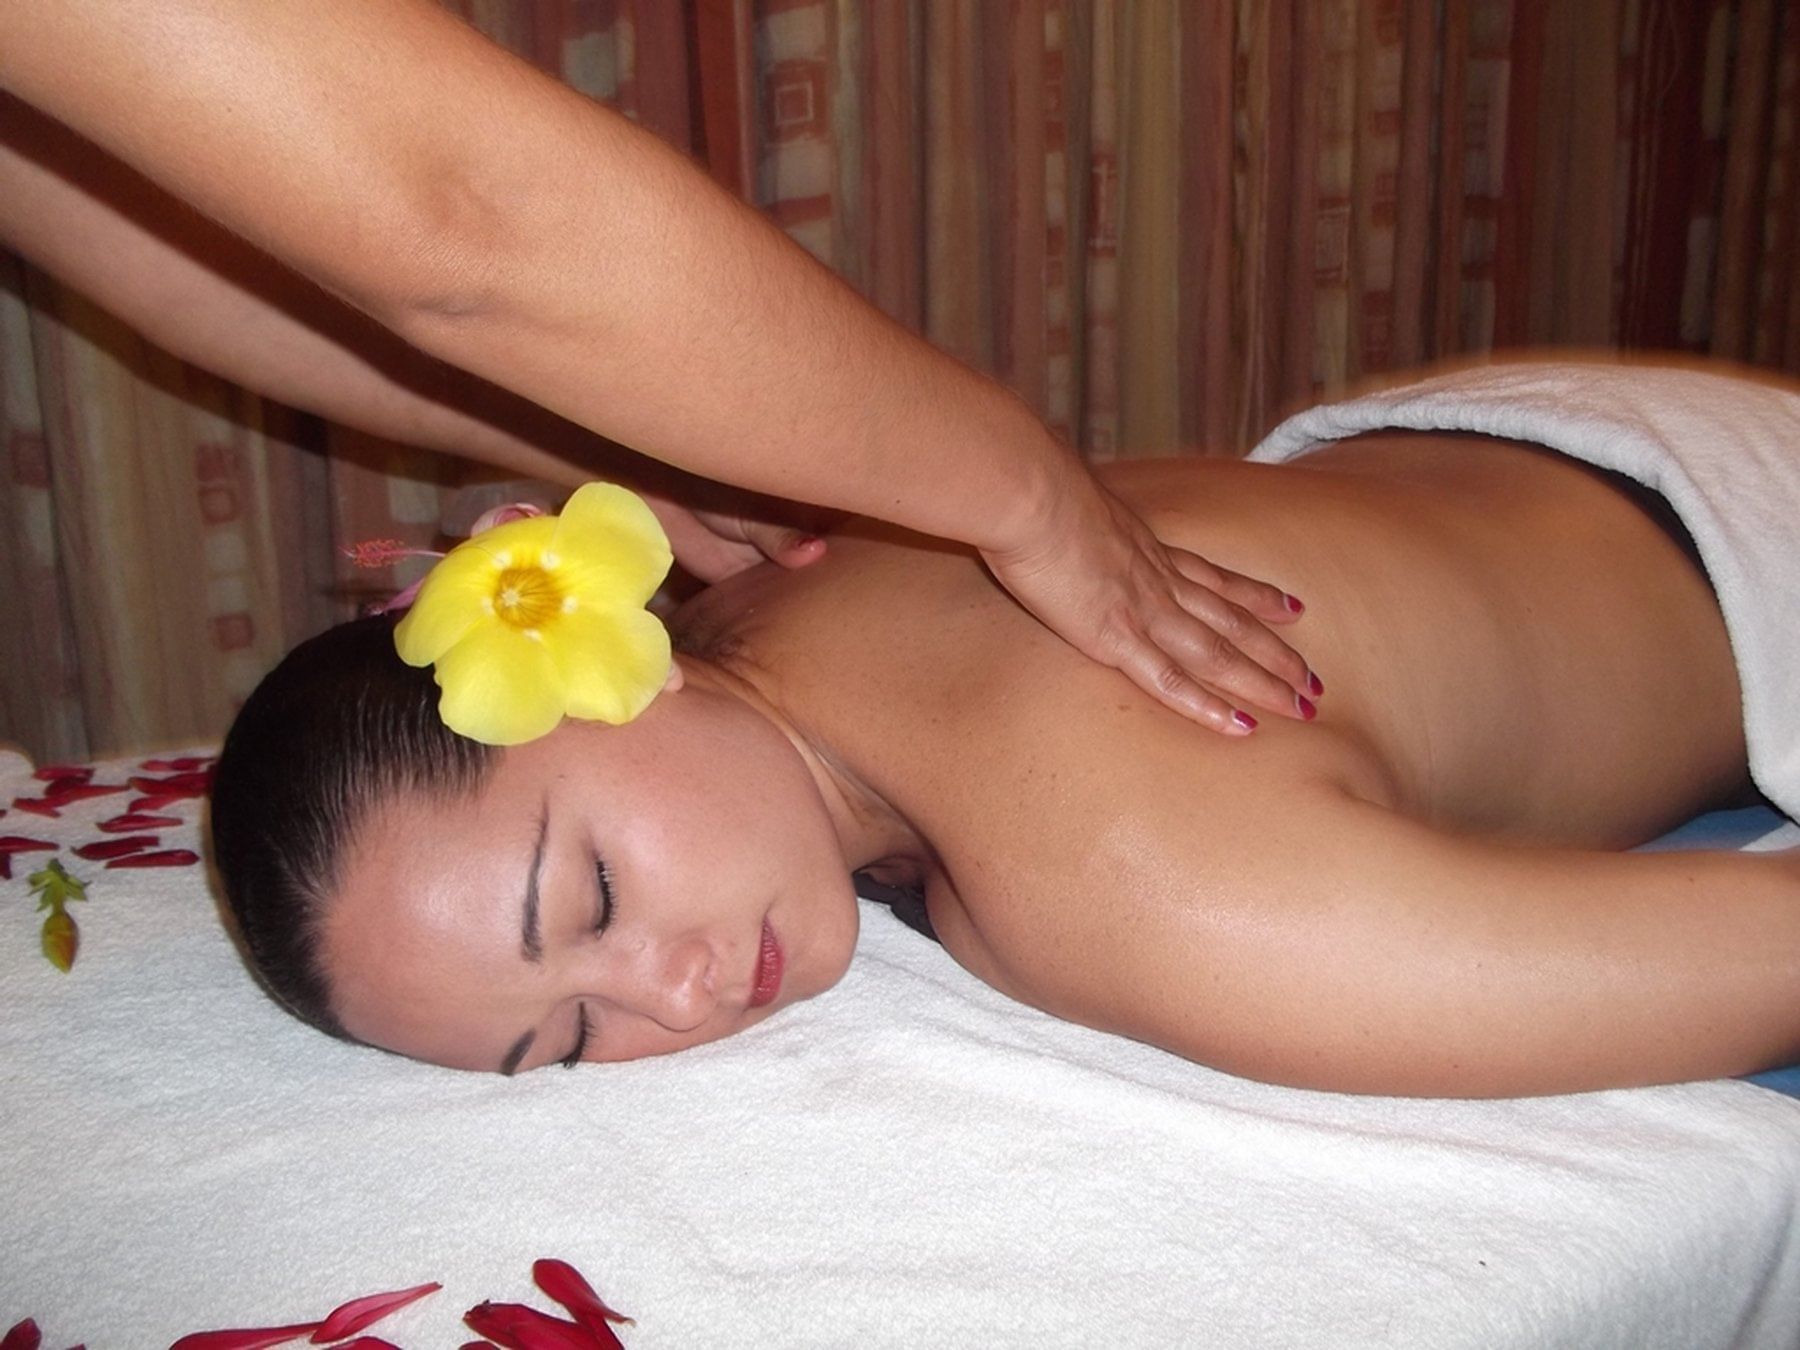 a woman receiving a massage